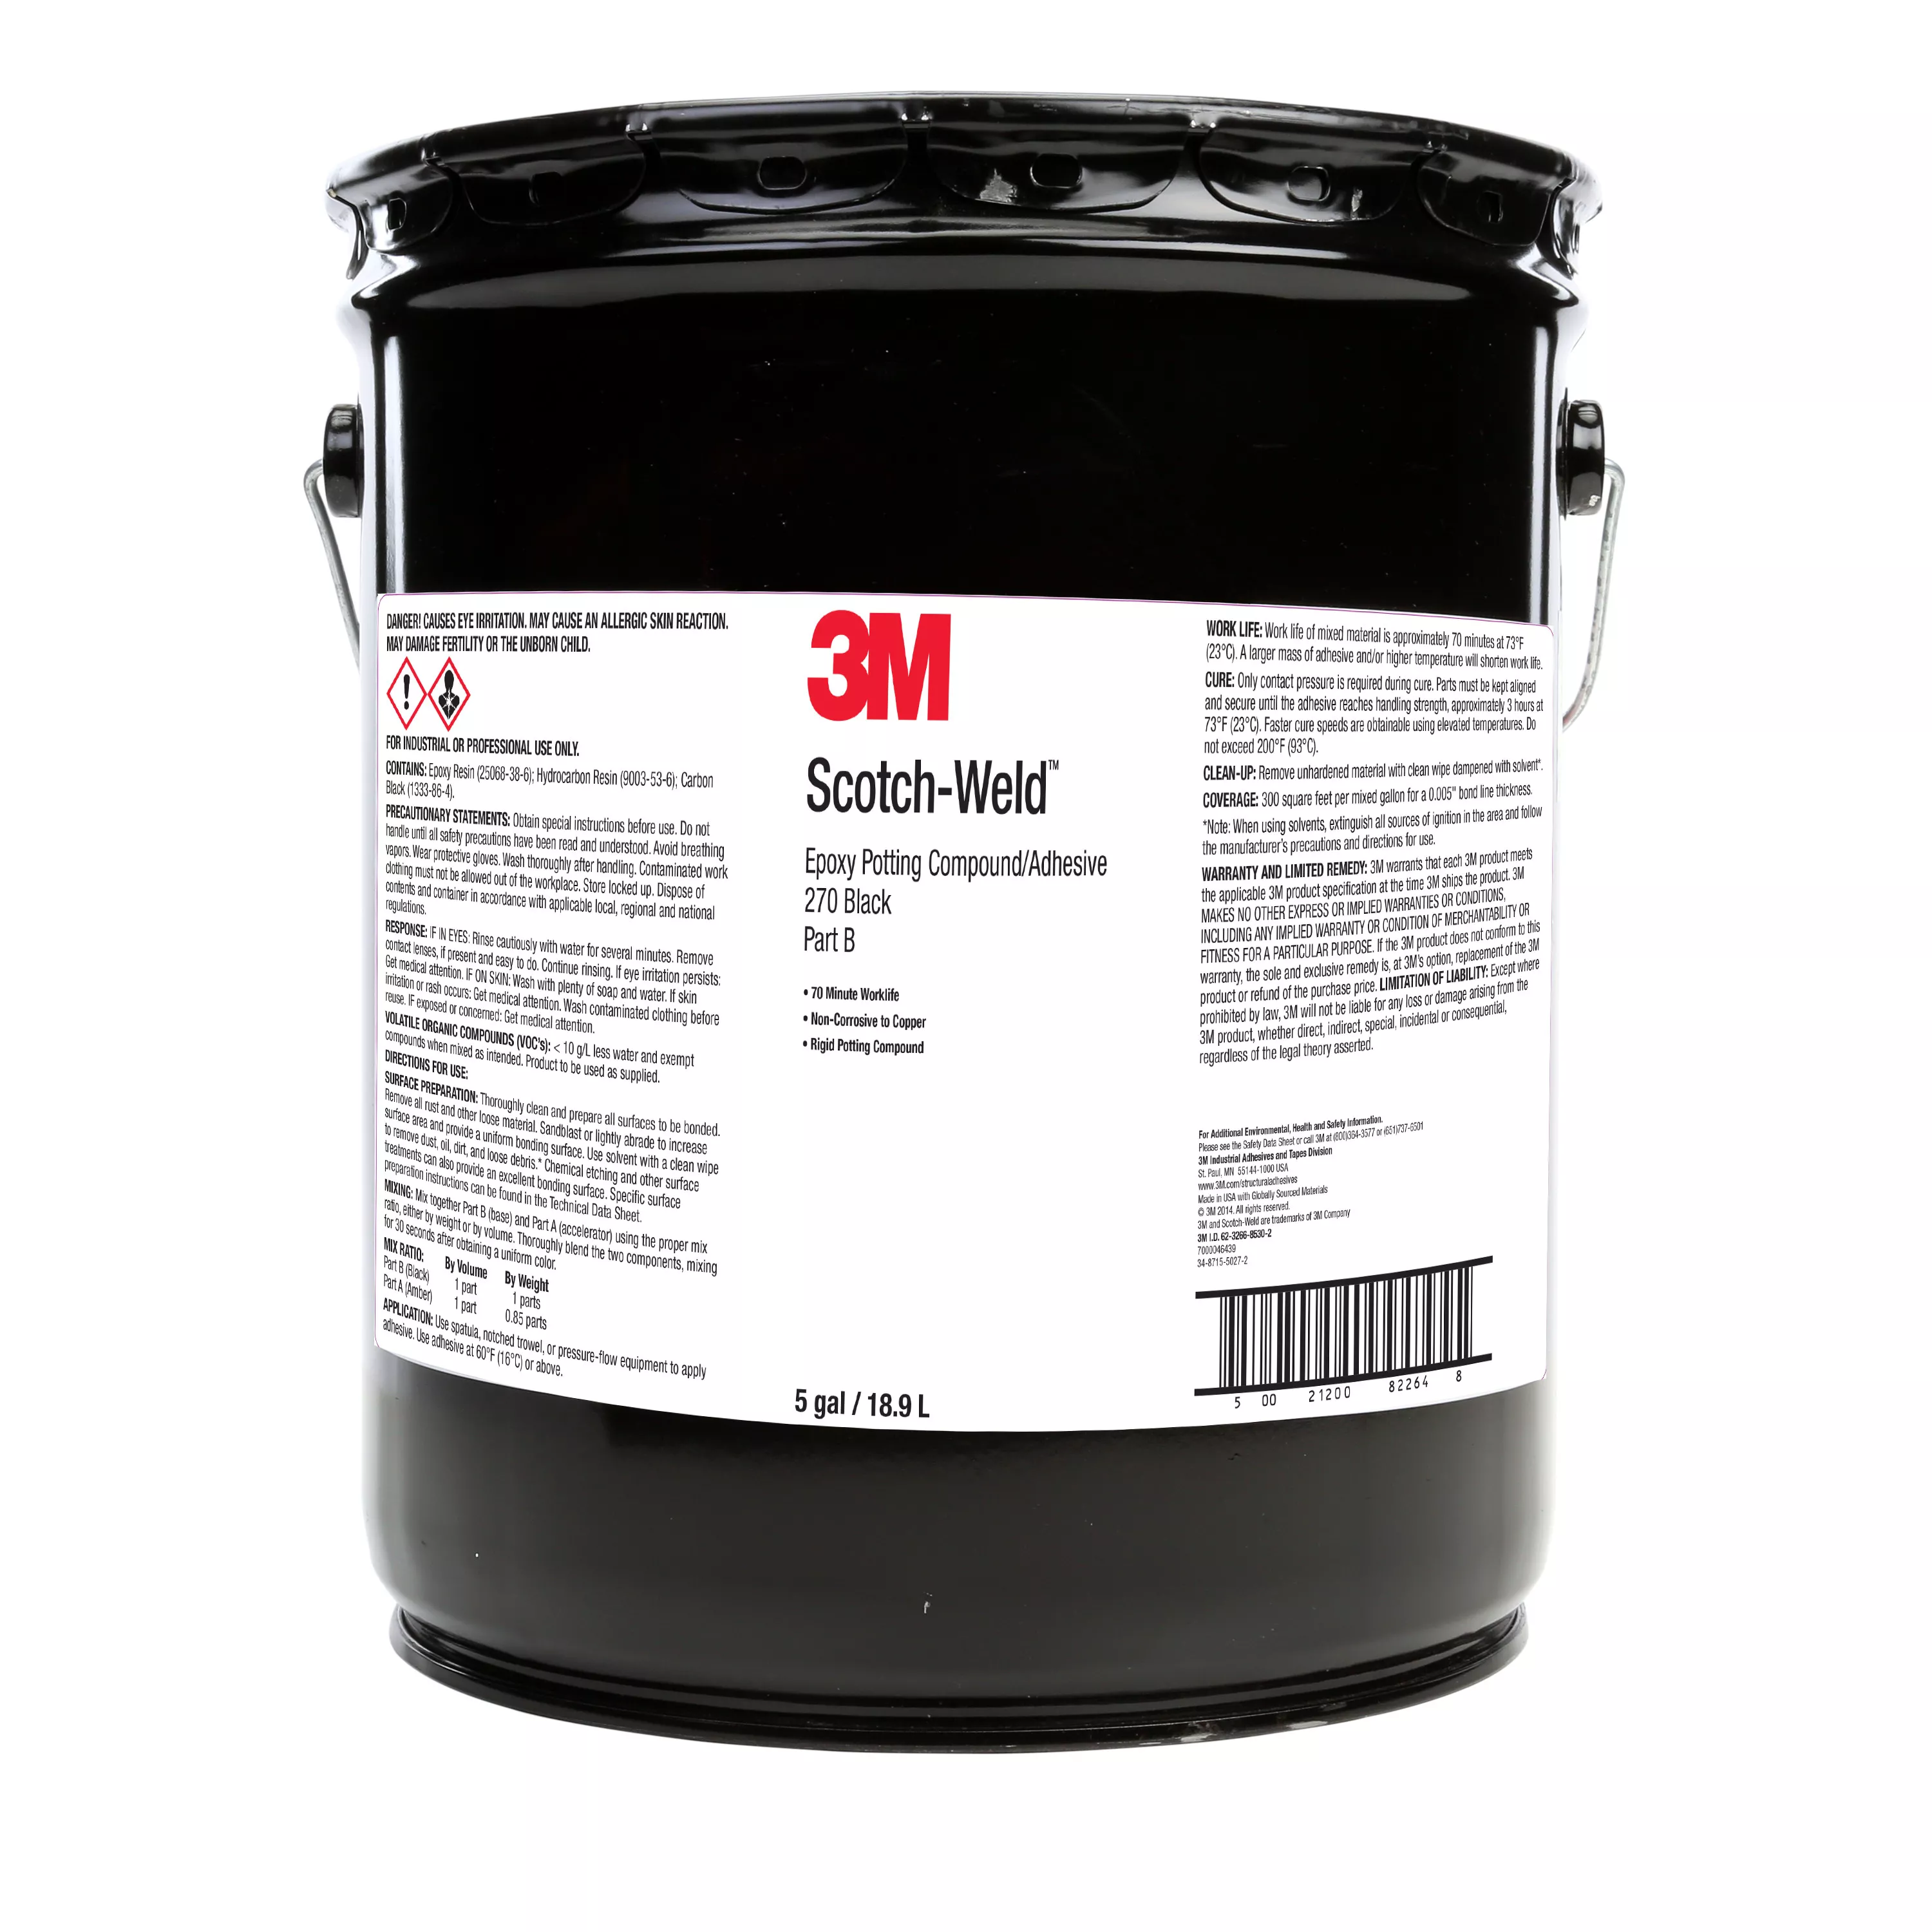 3M™ Scotch-Weld™ Epoxy Potting Compound 270, Black, Part B, 5 Gallon
(Pail), 1 Can/Drum